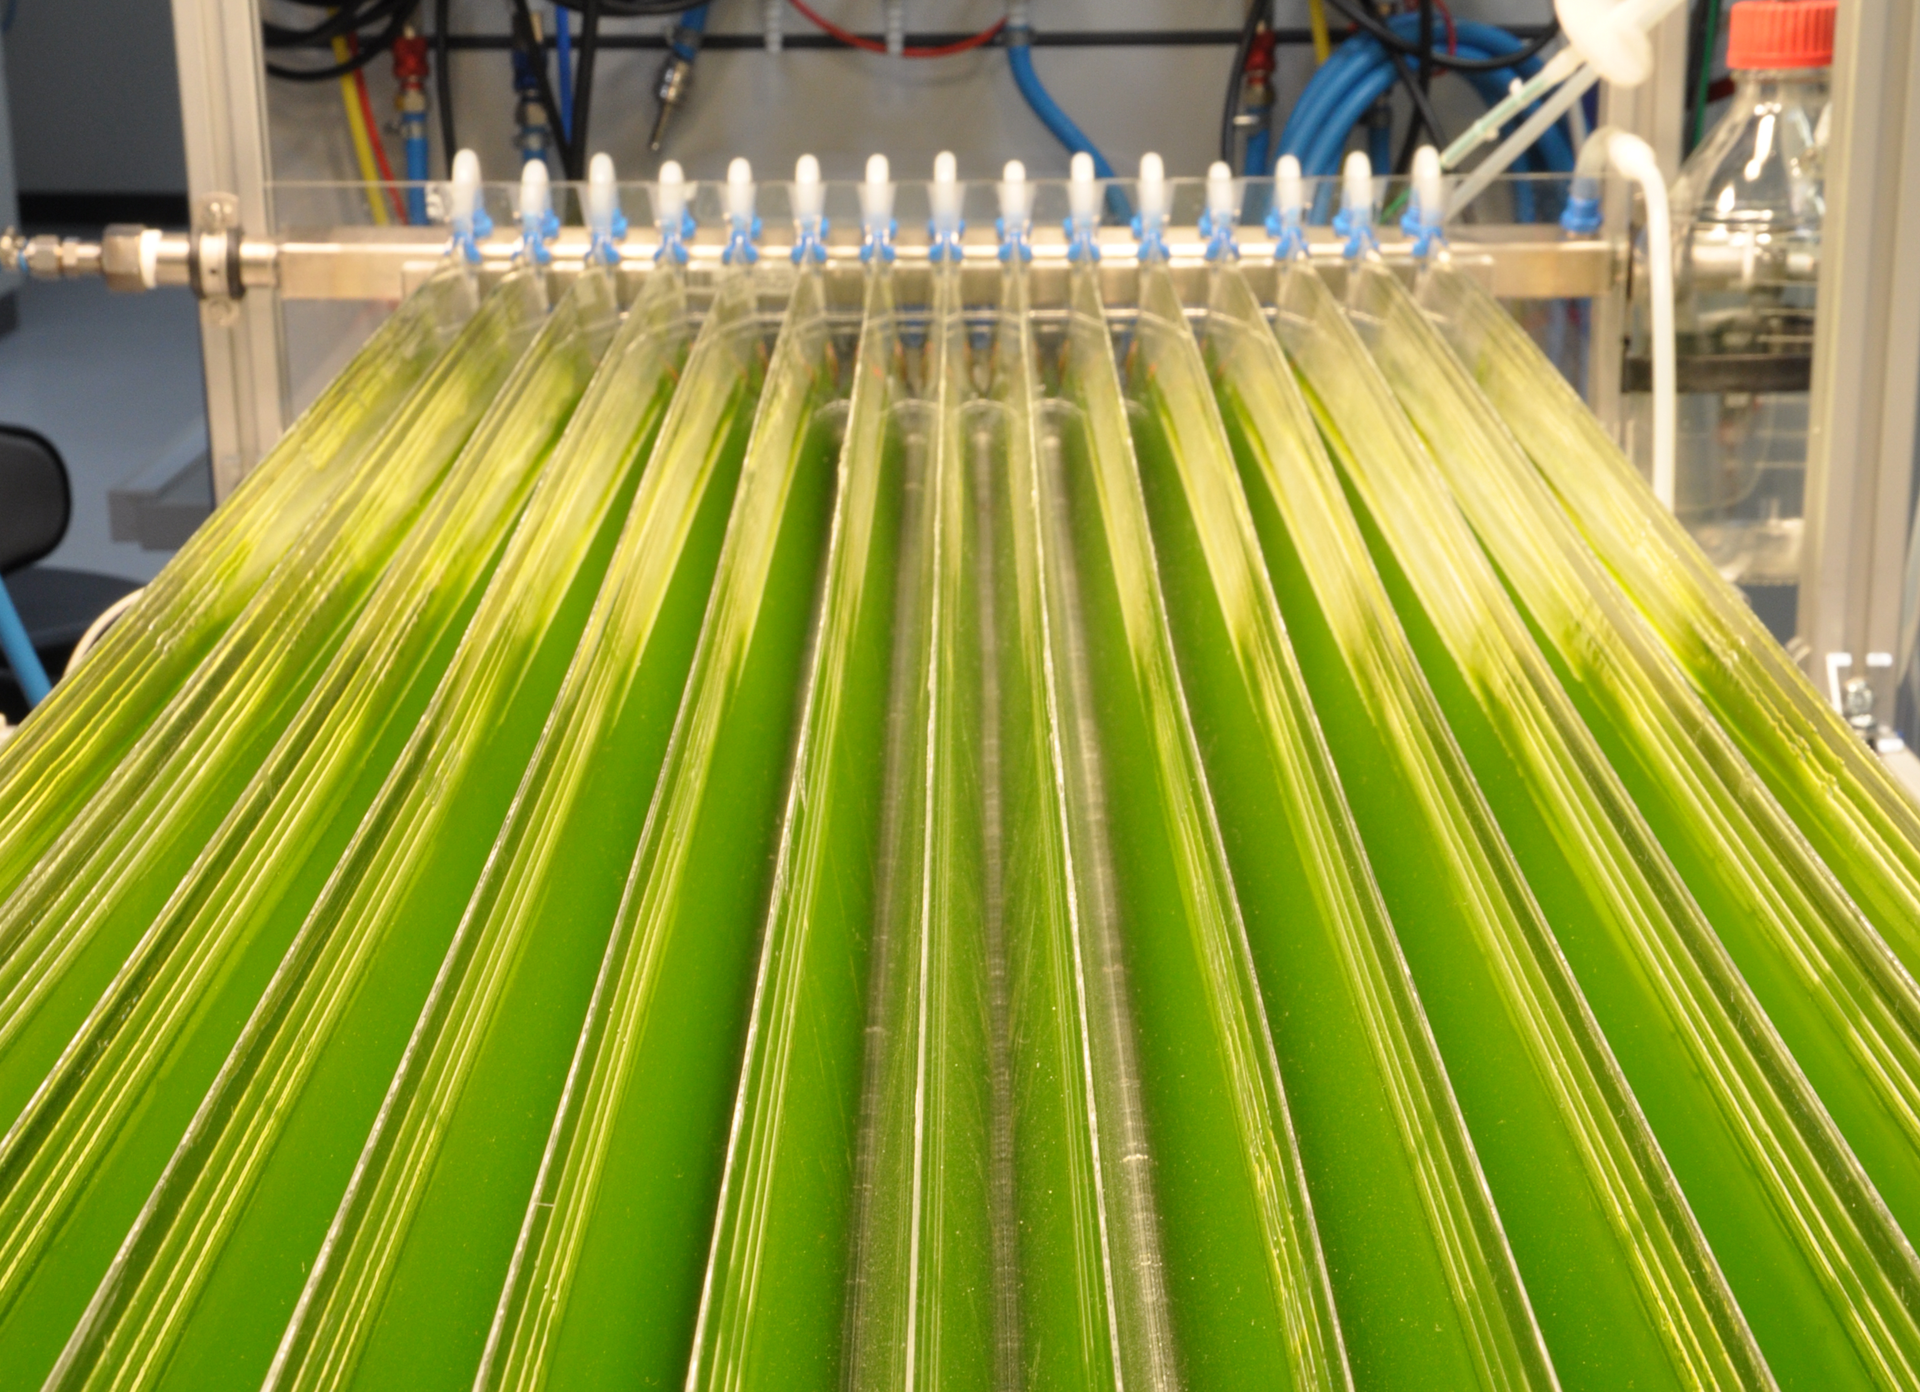 Fotografia przedstawia rzędy żółto zielonych pionowych płaszczyzn, w których hodowane są genetycznie modyfikowane sinice. W głębi znajdują się białe niebieski rury i zawory. Instalacja ta służy do produkcji etanolu.